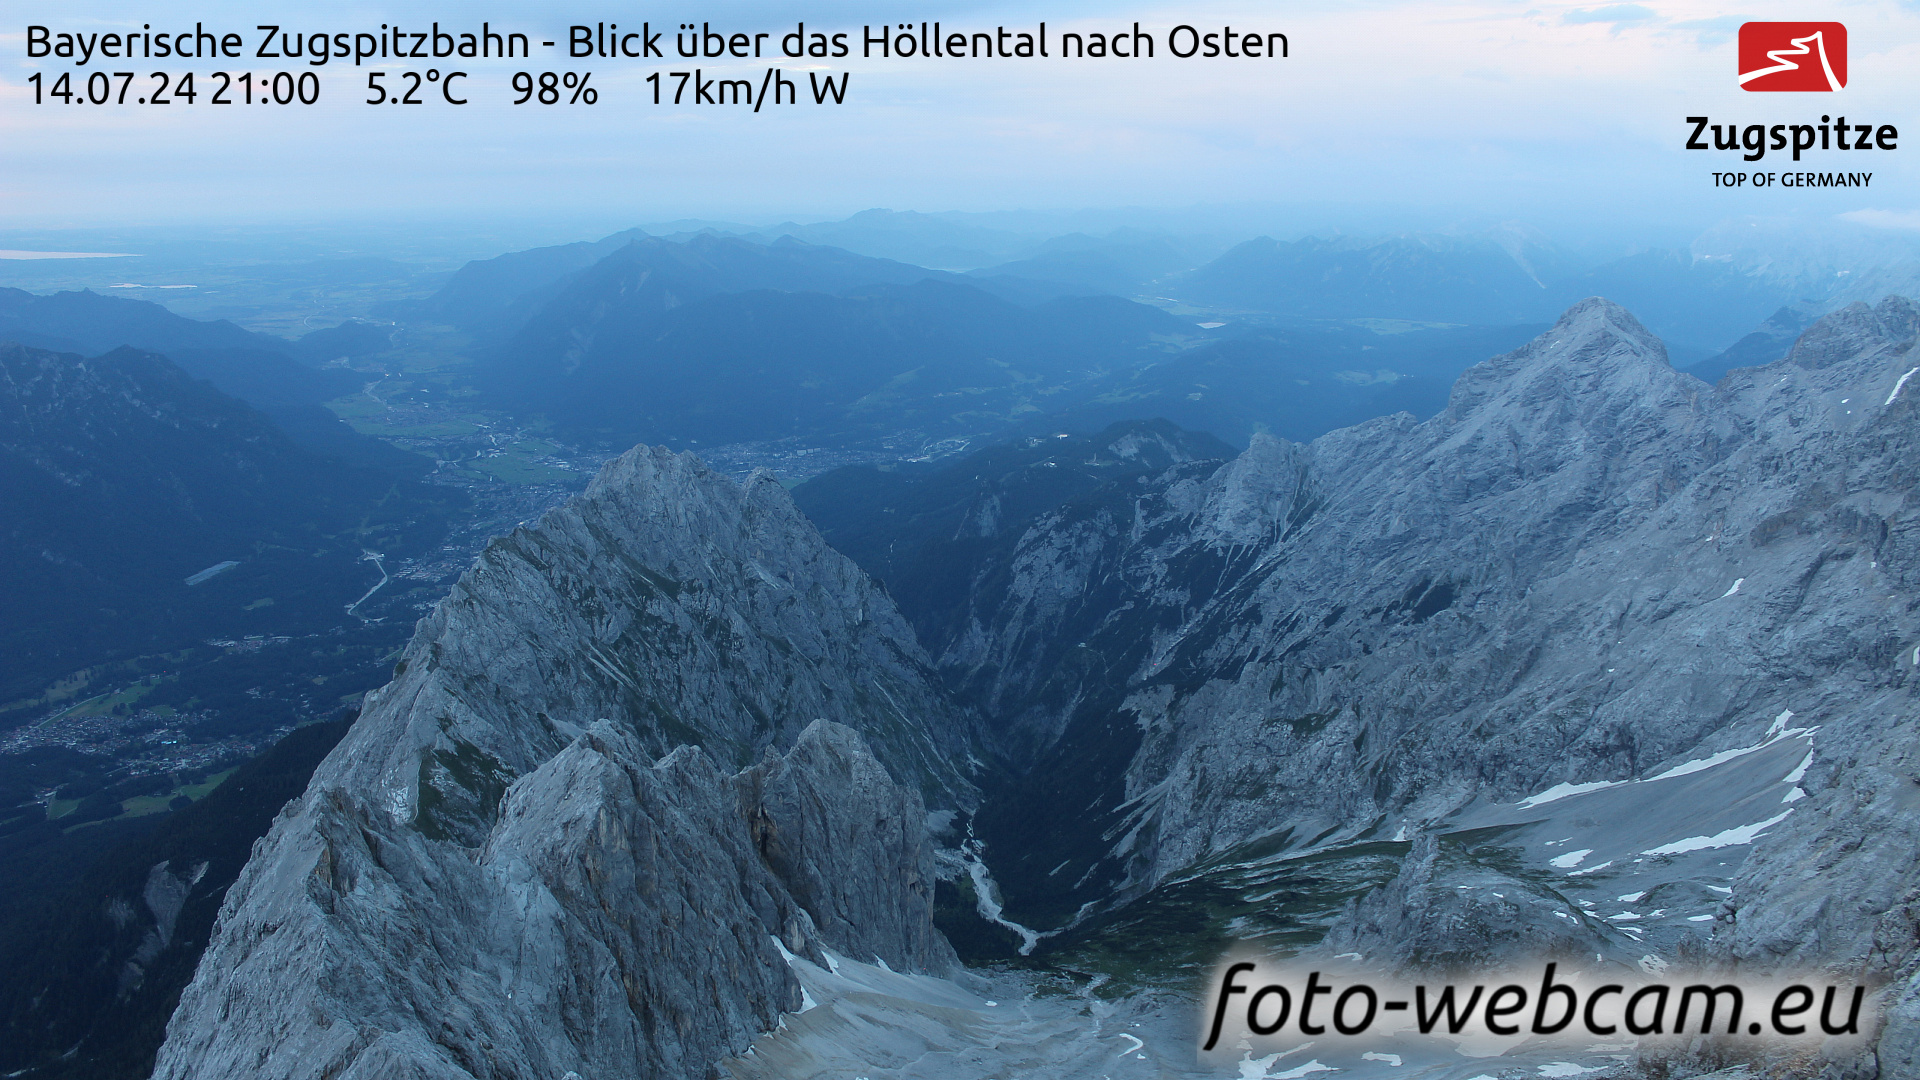 Zugspitze Wed. 21:05